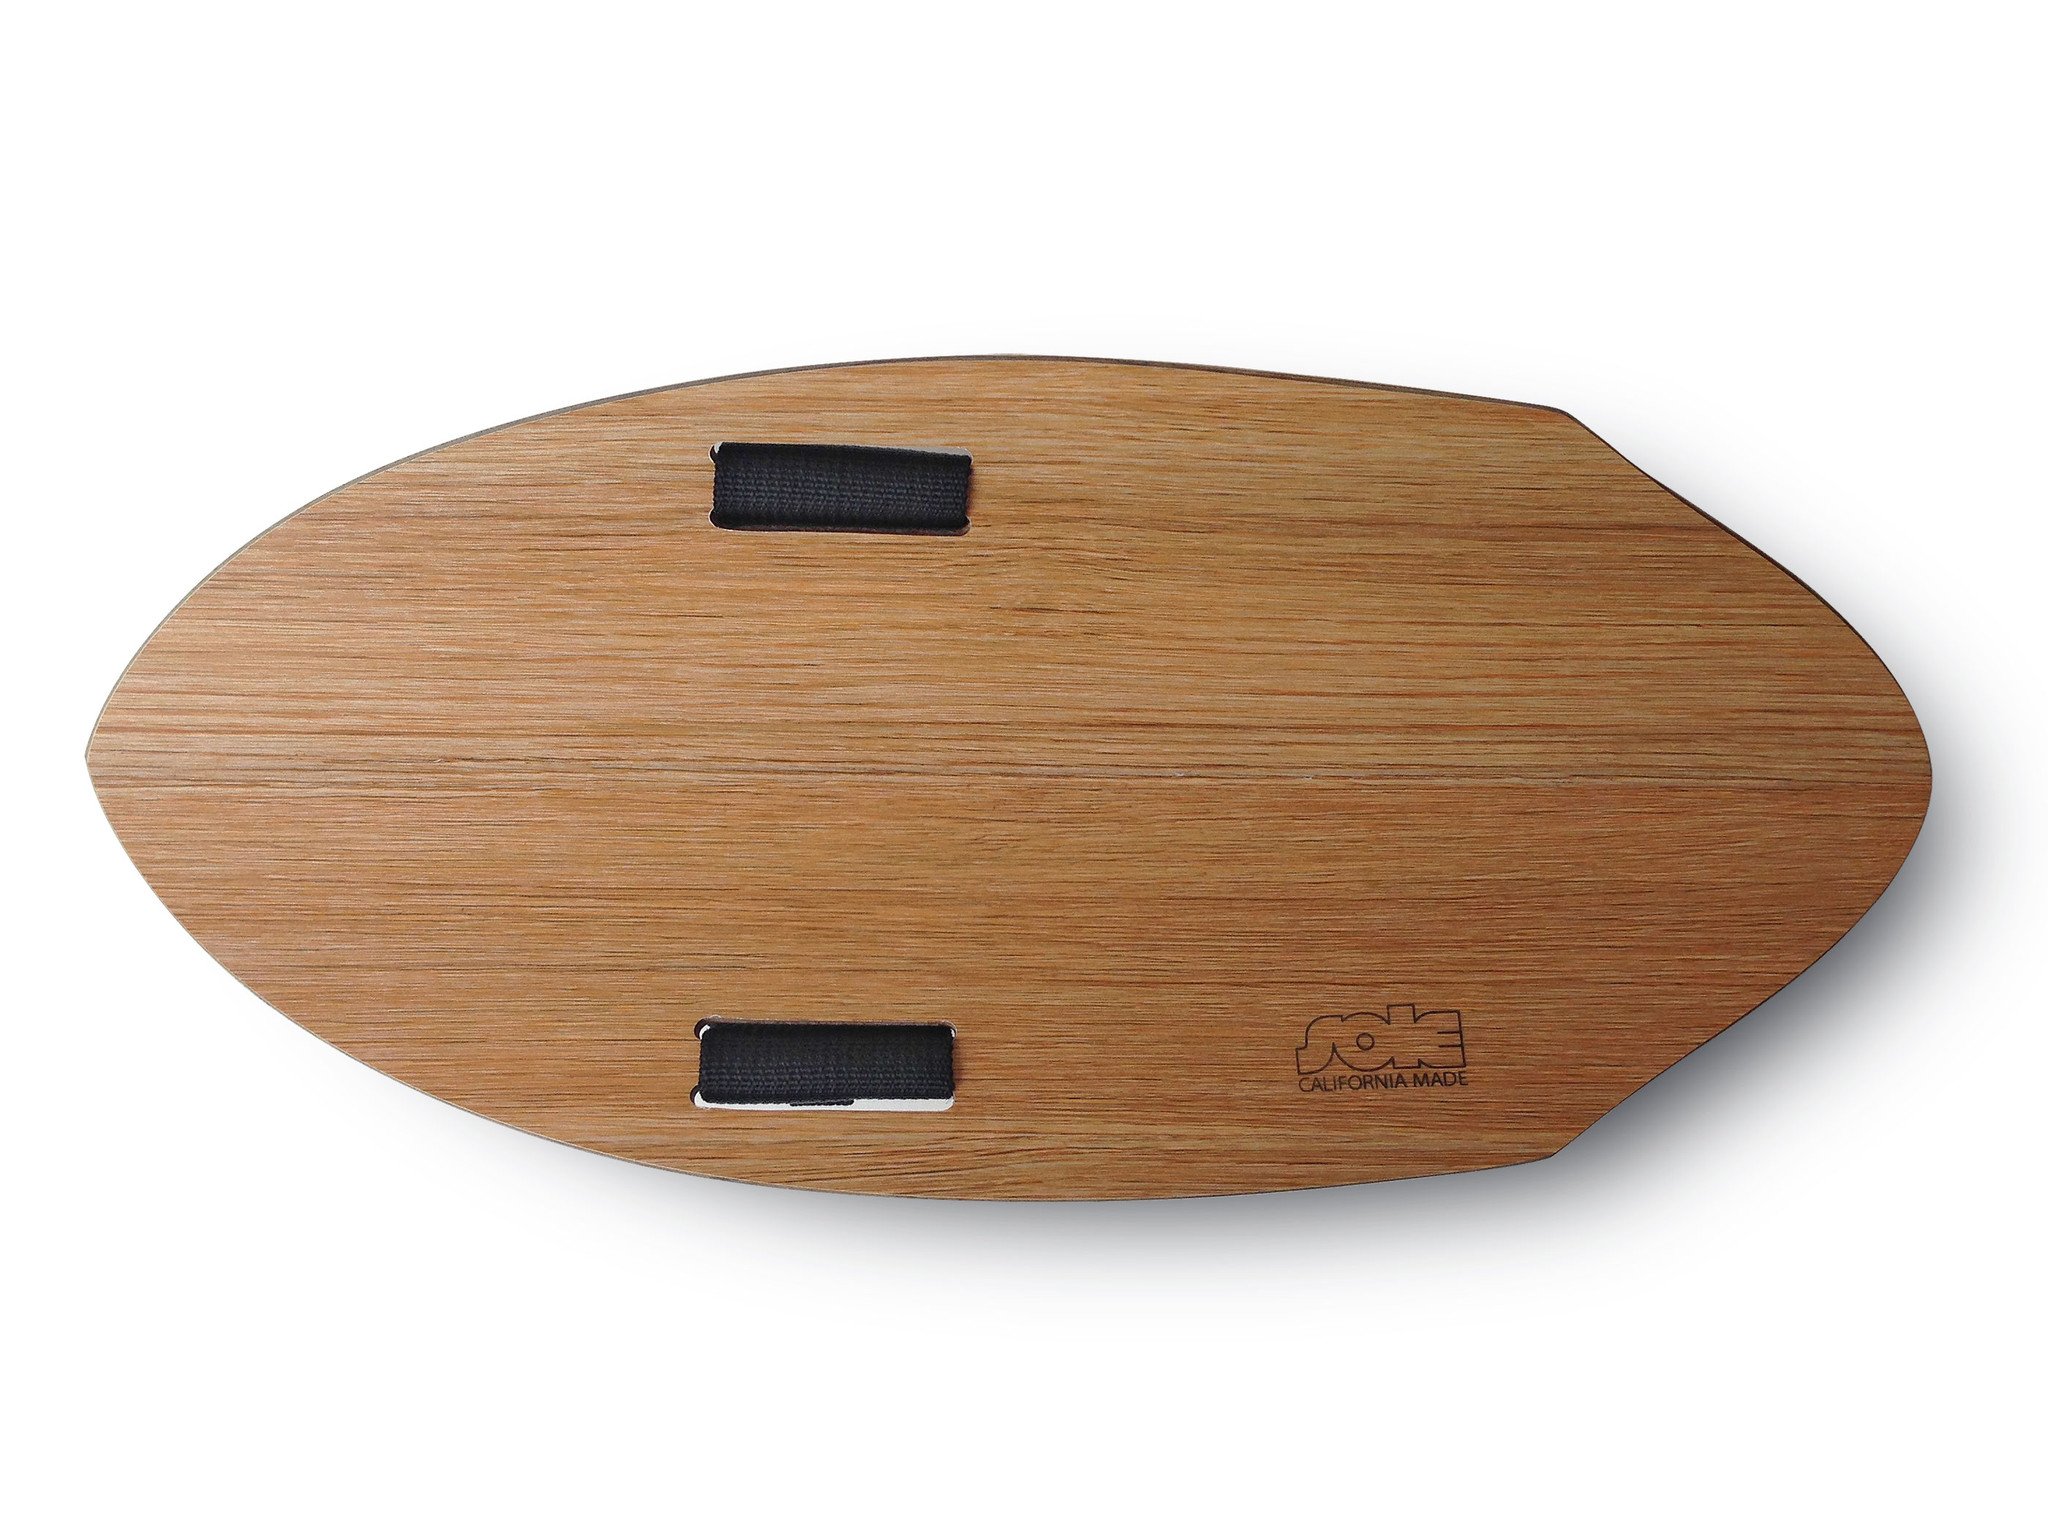 ה- Woodie Pin-Tail מתלבש על כף היד לגלישת Bodysurfing.מגיע עם זנב Round.עשויי מעץ וחתוך בלייזר.הקונקייב בתחתית נותן הרבה מהירות.